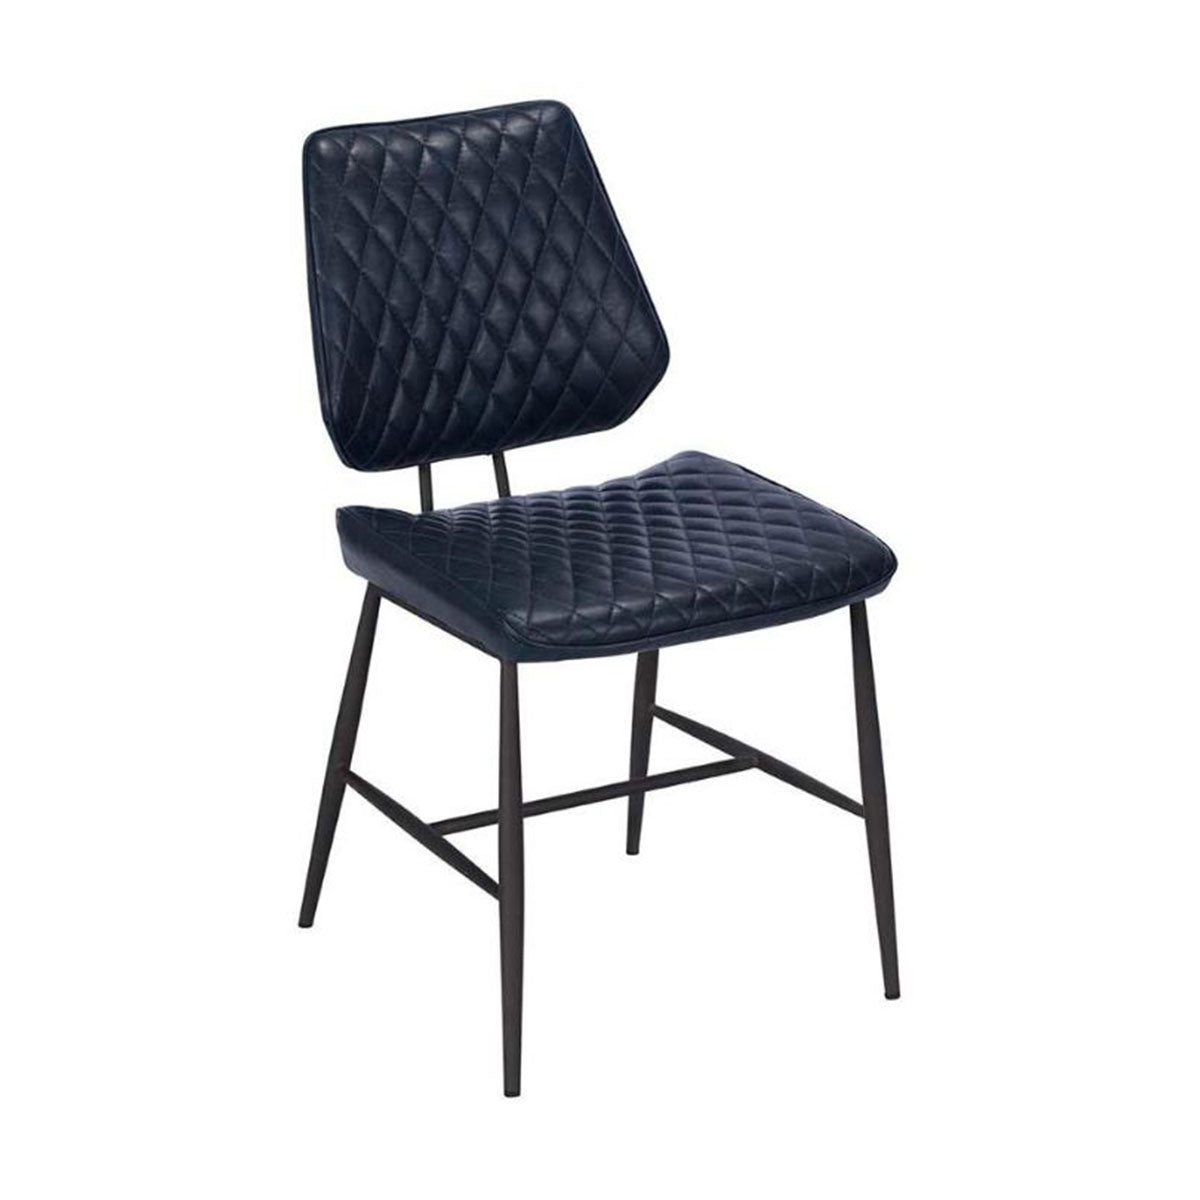 Dalton Dining Chair Dark Blue - Pair